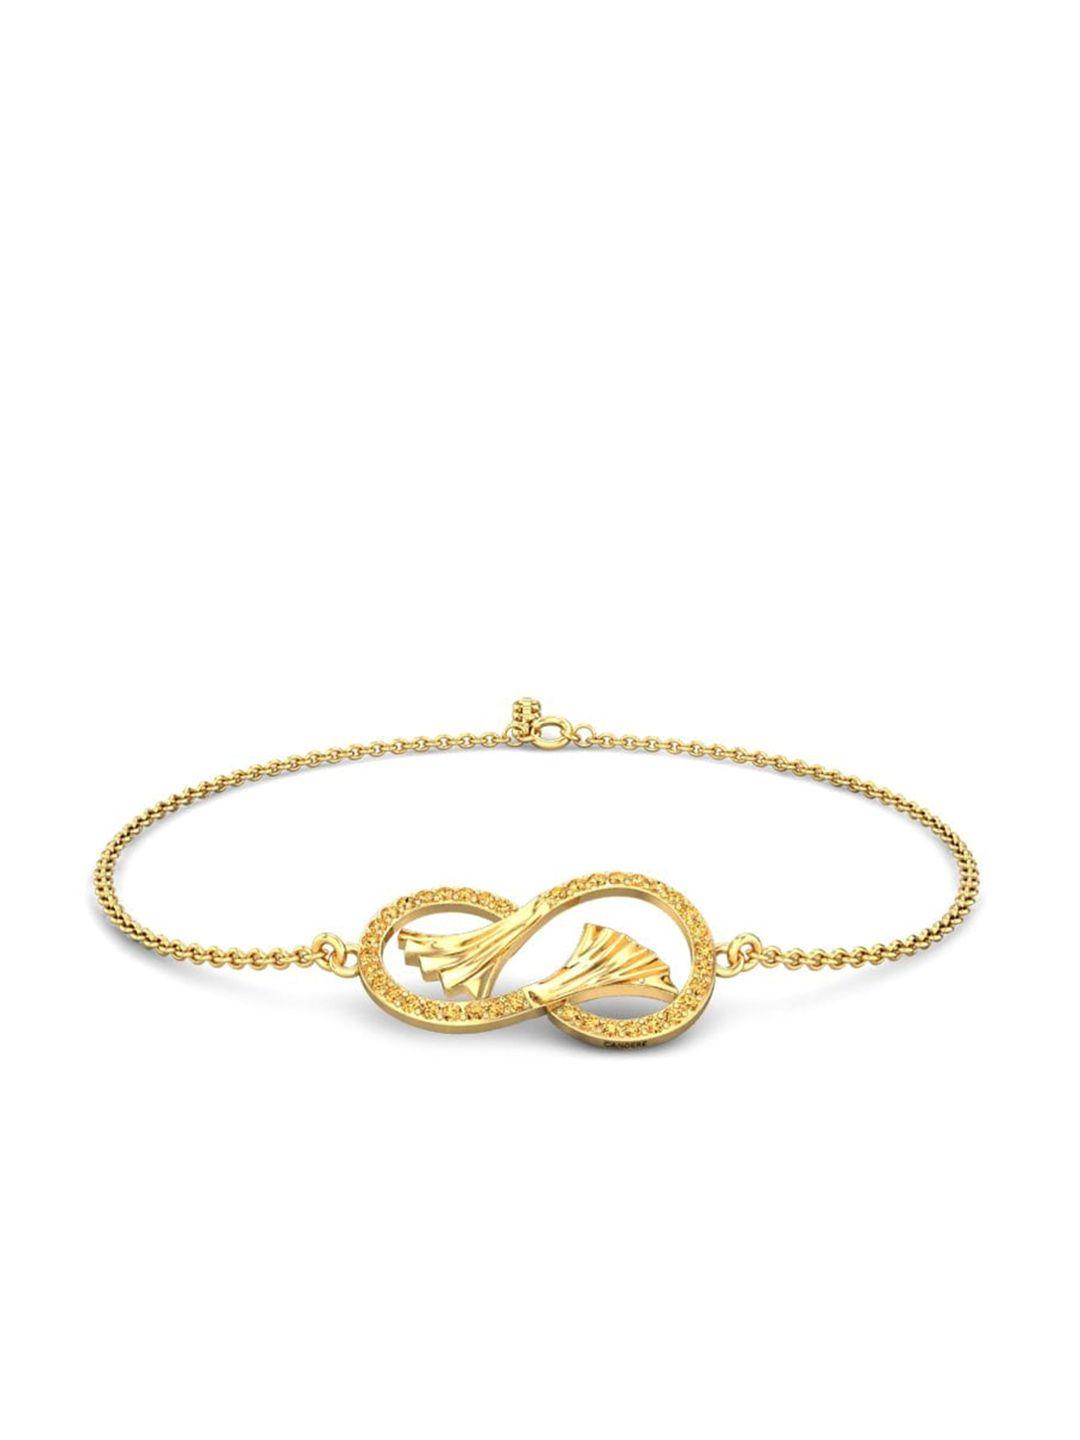 candere-a-kalyan-jewellers-company-18kt-gold-bracelet-3.28gm